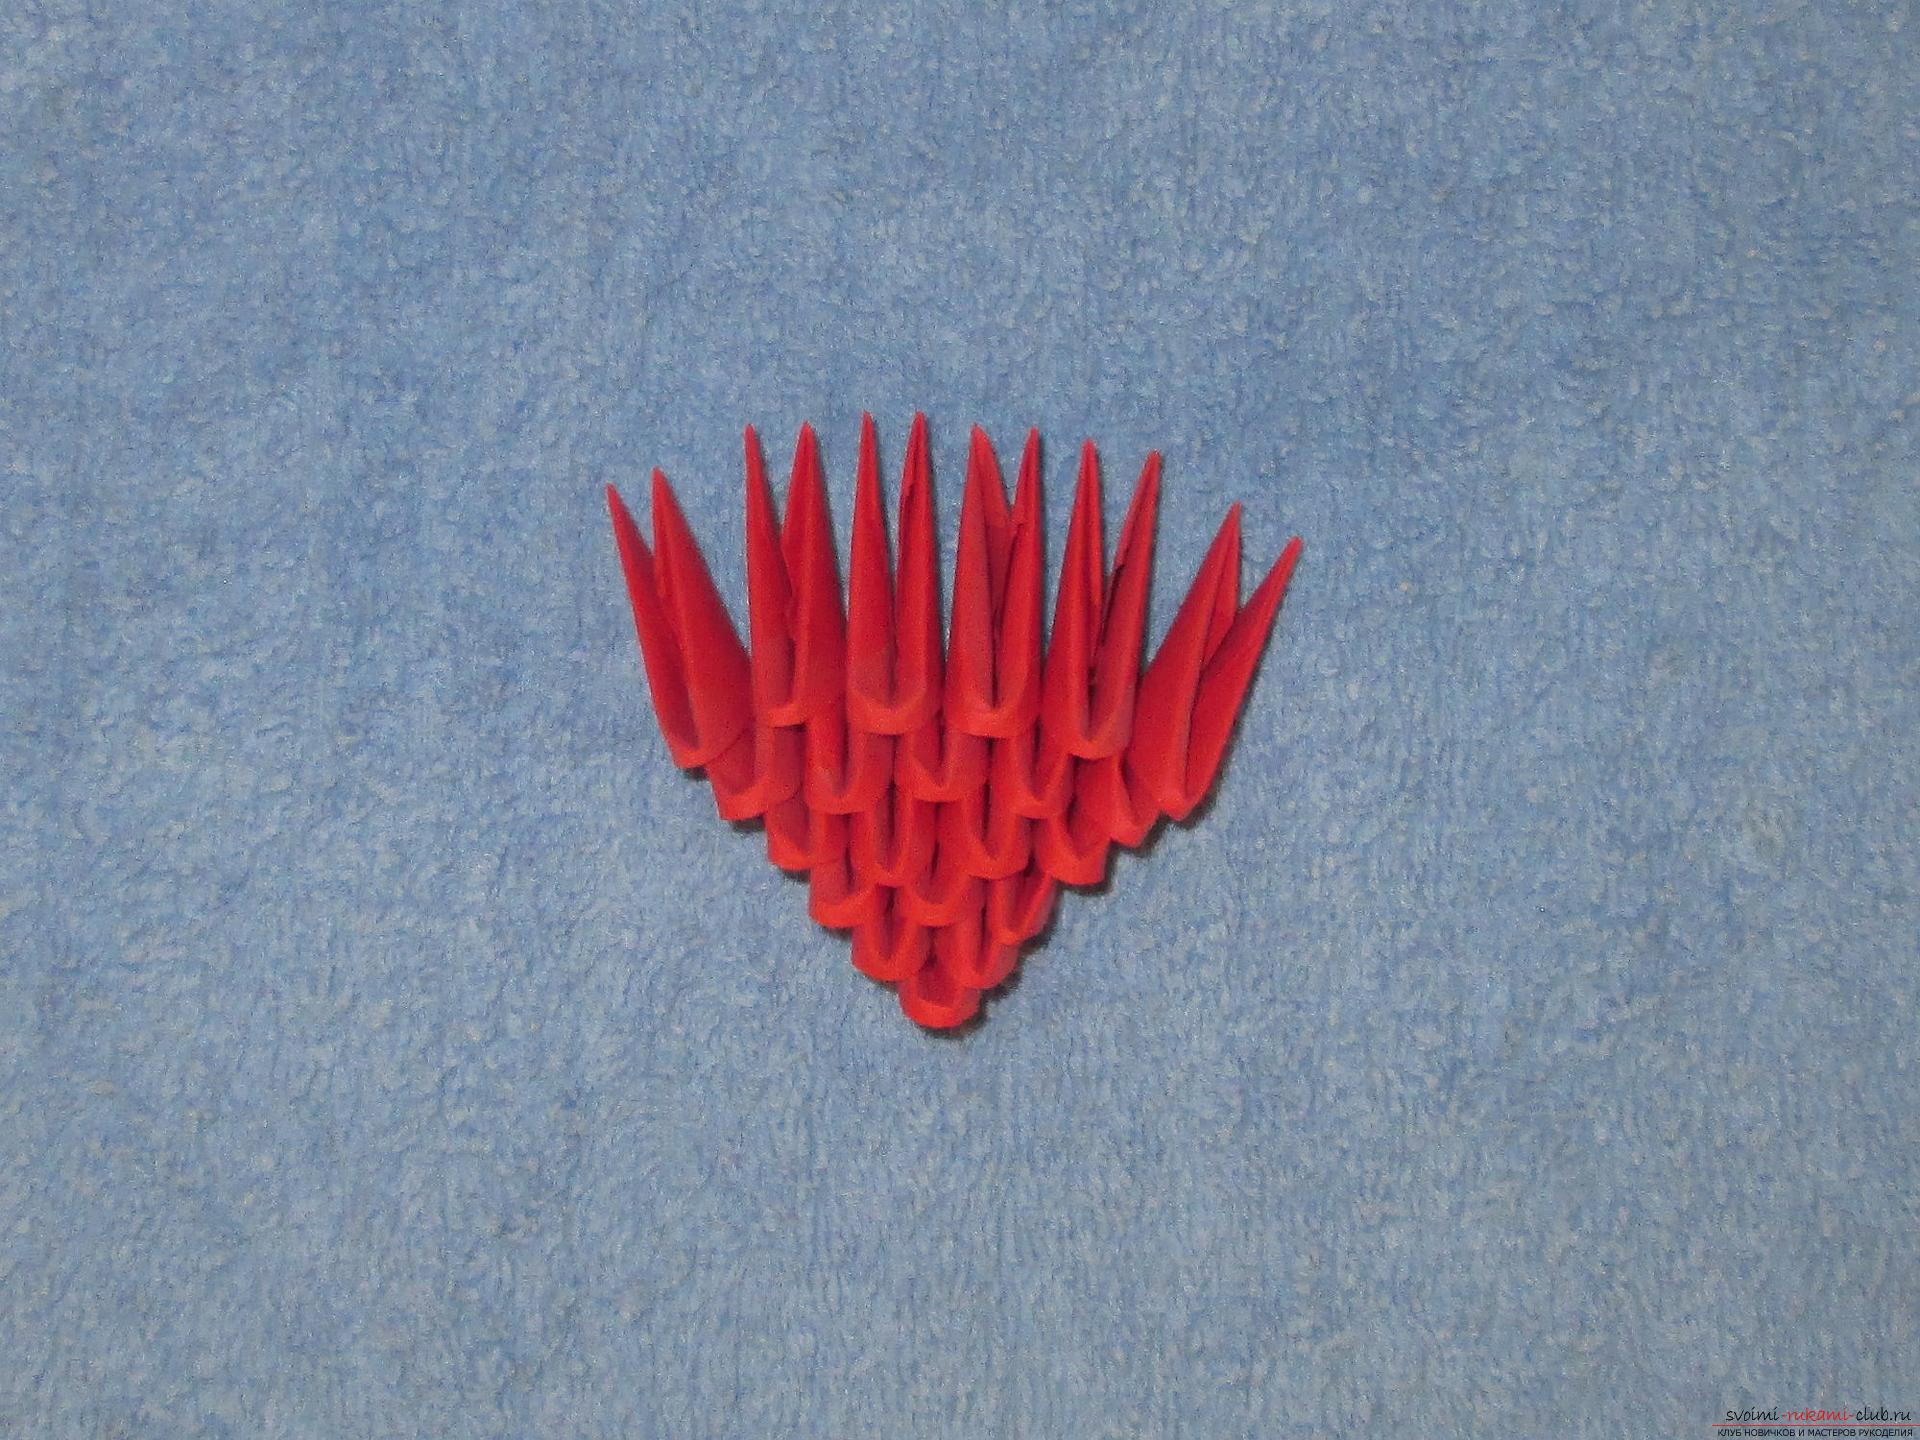 Мастер-класс подарков своими руками – модульного оригами сердечко – очень актуален накануне Дня влюбленных.. Фото №2